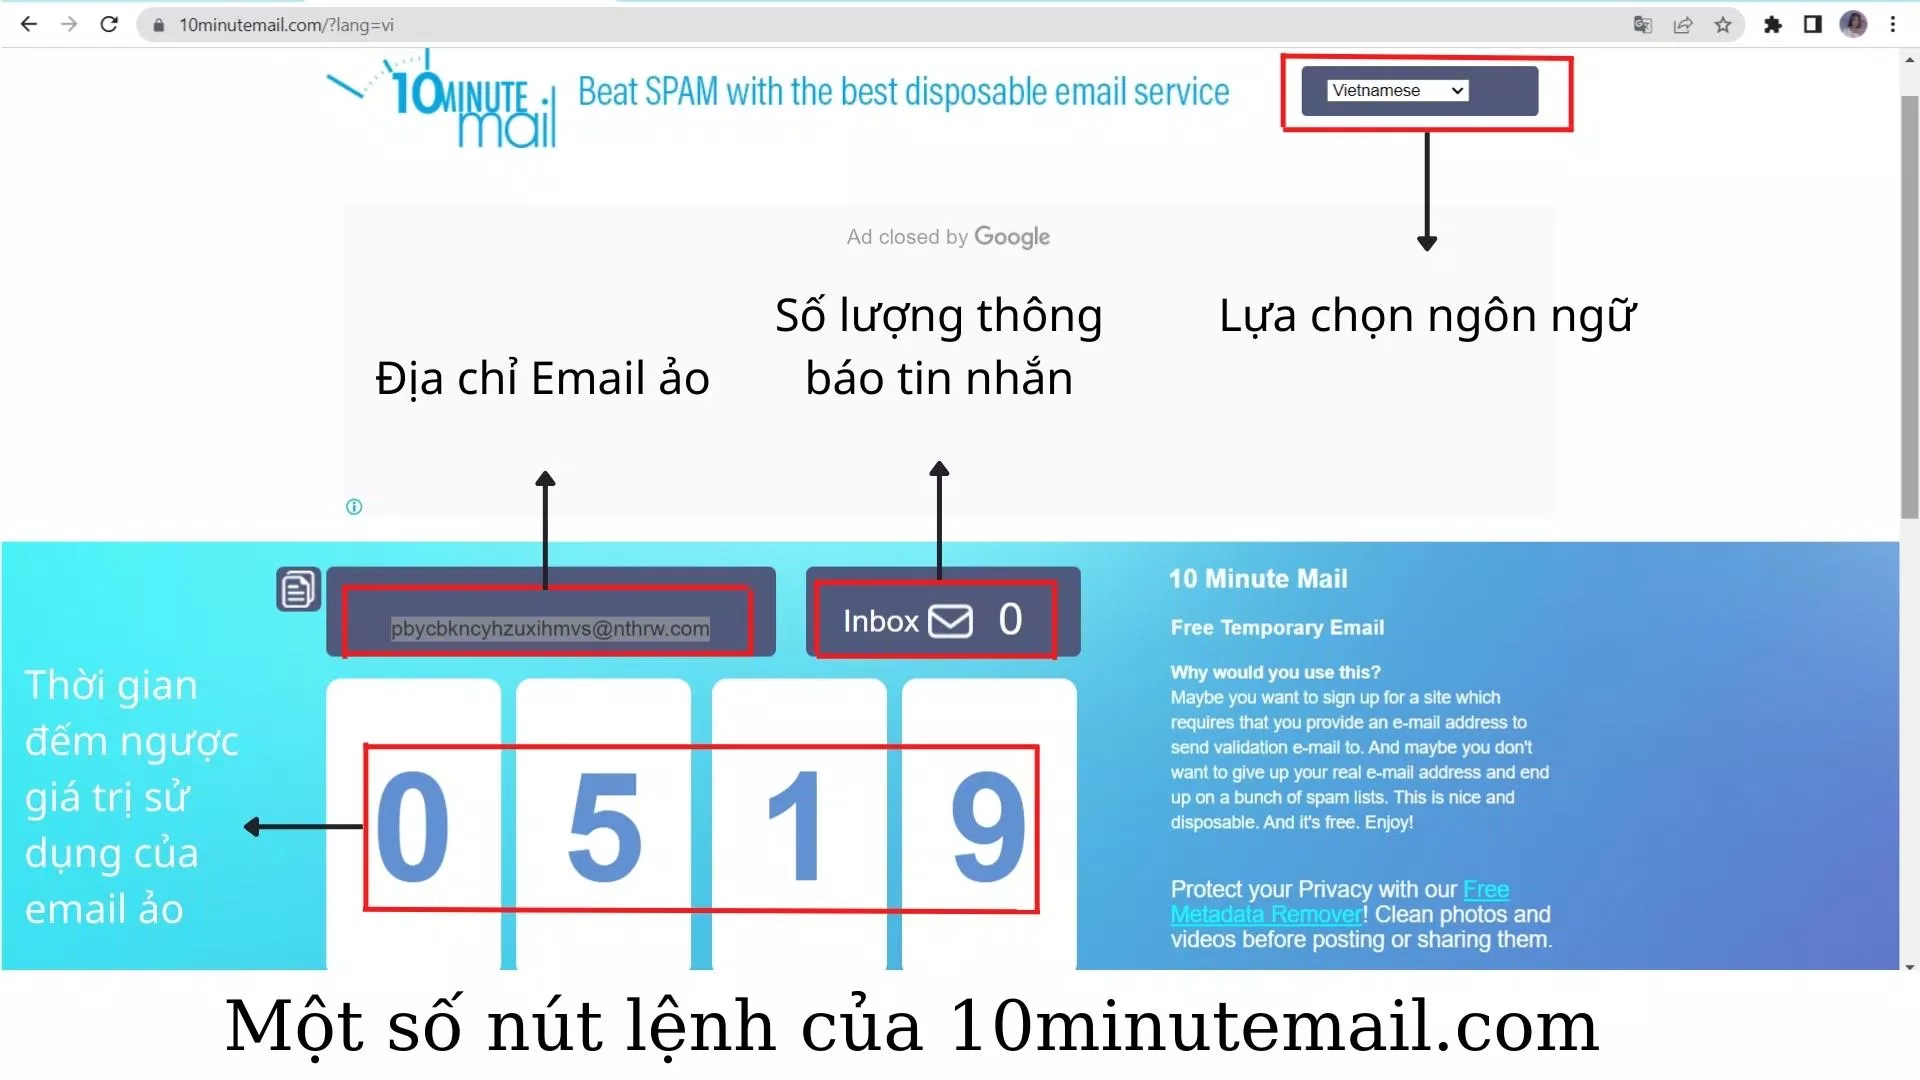 Các nút lệnh của email ảo 10minutemail.com (Nguồn ảnh: BlogAnChoi).